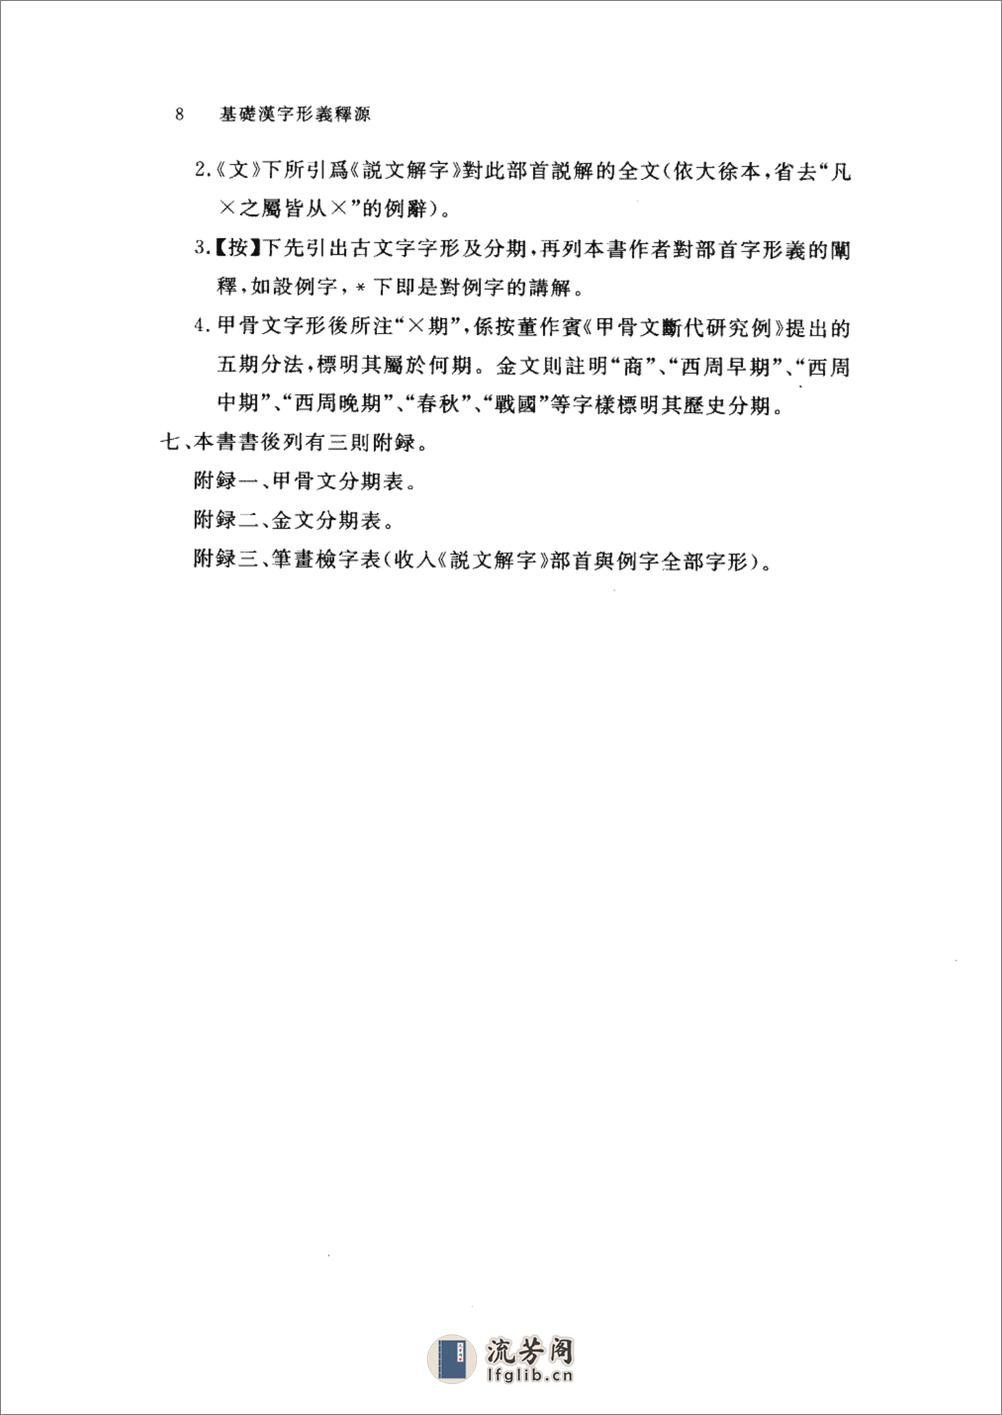 基础汉字形义释源 - 第17页预览图